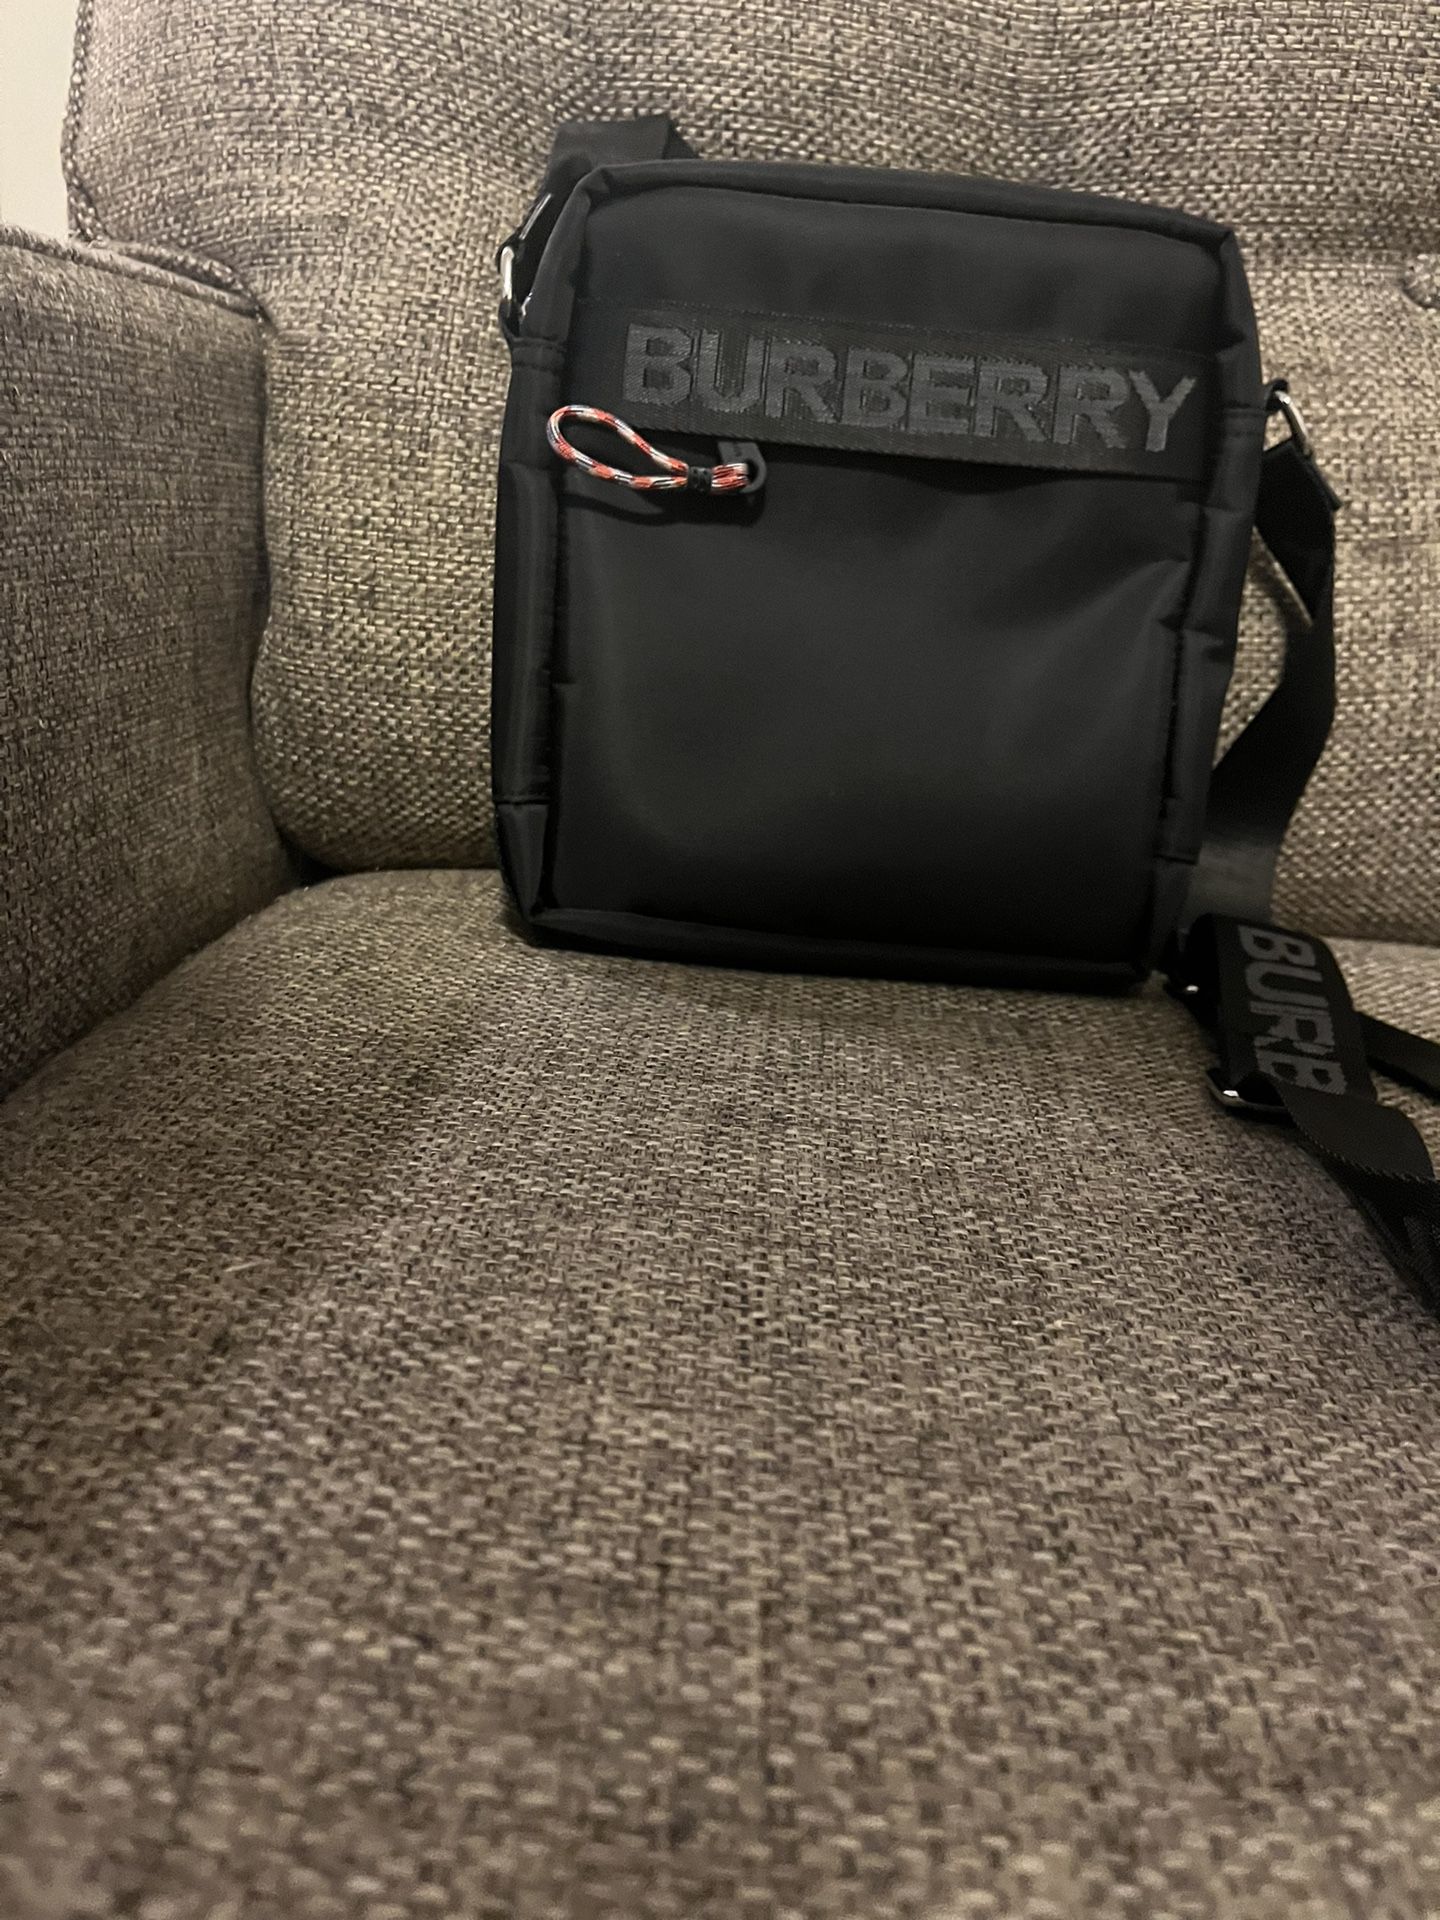 Burberry  Hand Bag Black 